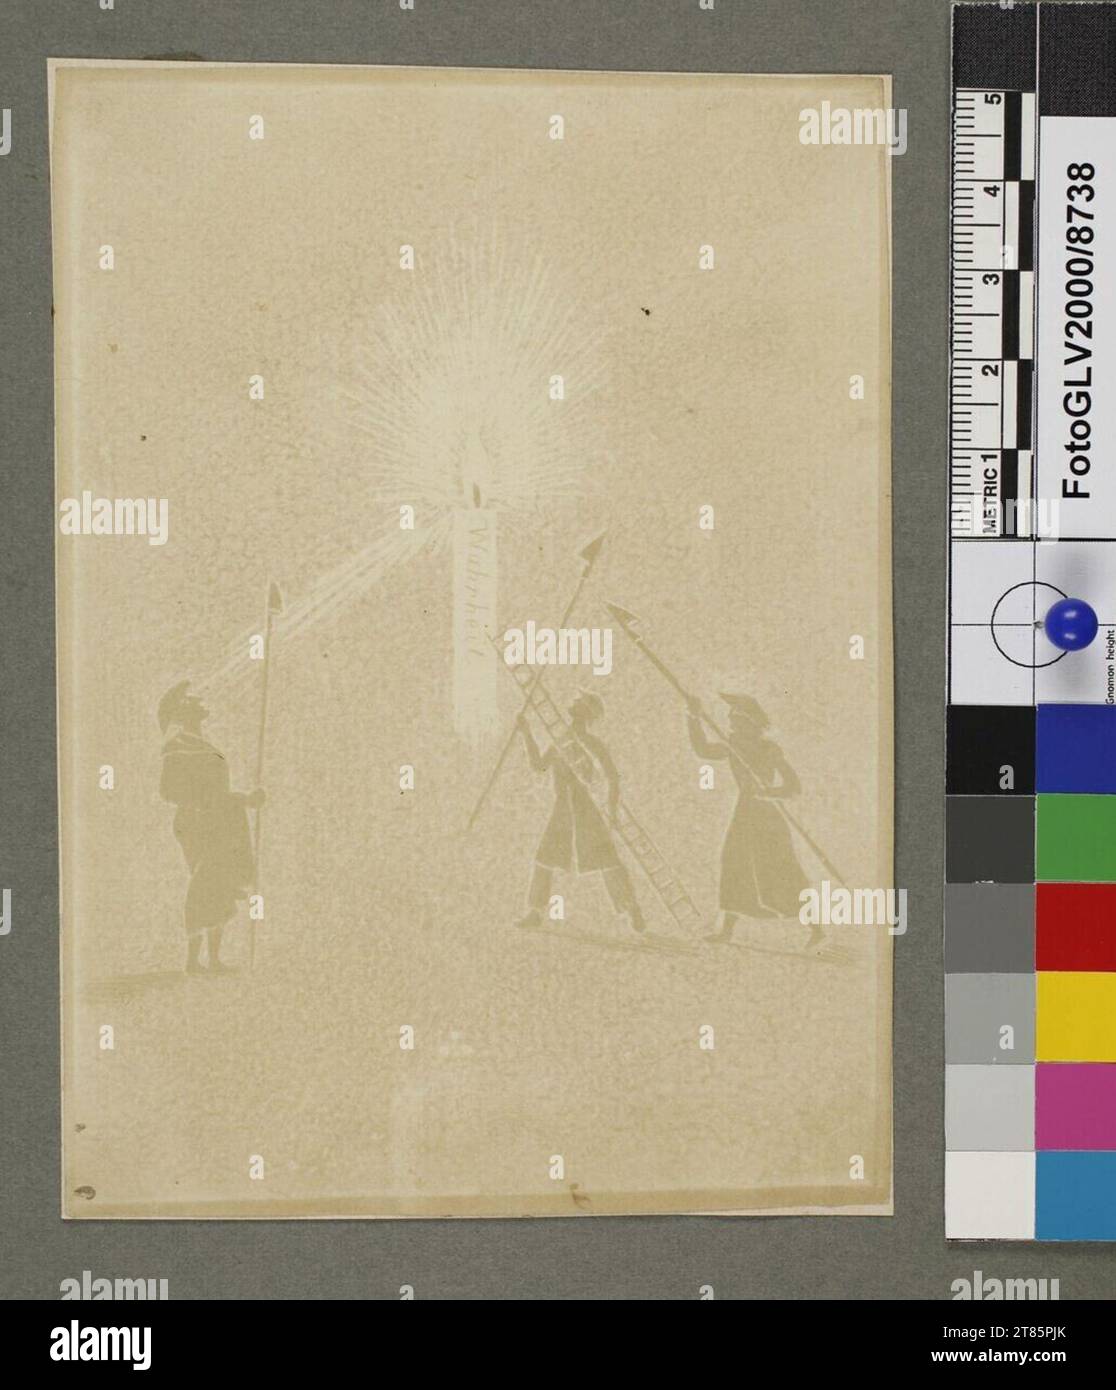 Johann Carl Enslen trois hommes lanternes avec des poteaux extincteurs, aveuglés par un créneau géant sur lequel se trouve la «vérité». Dessin photogénique sur papier salin, sur la boîte 1839, 1839 Banque D'Images